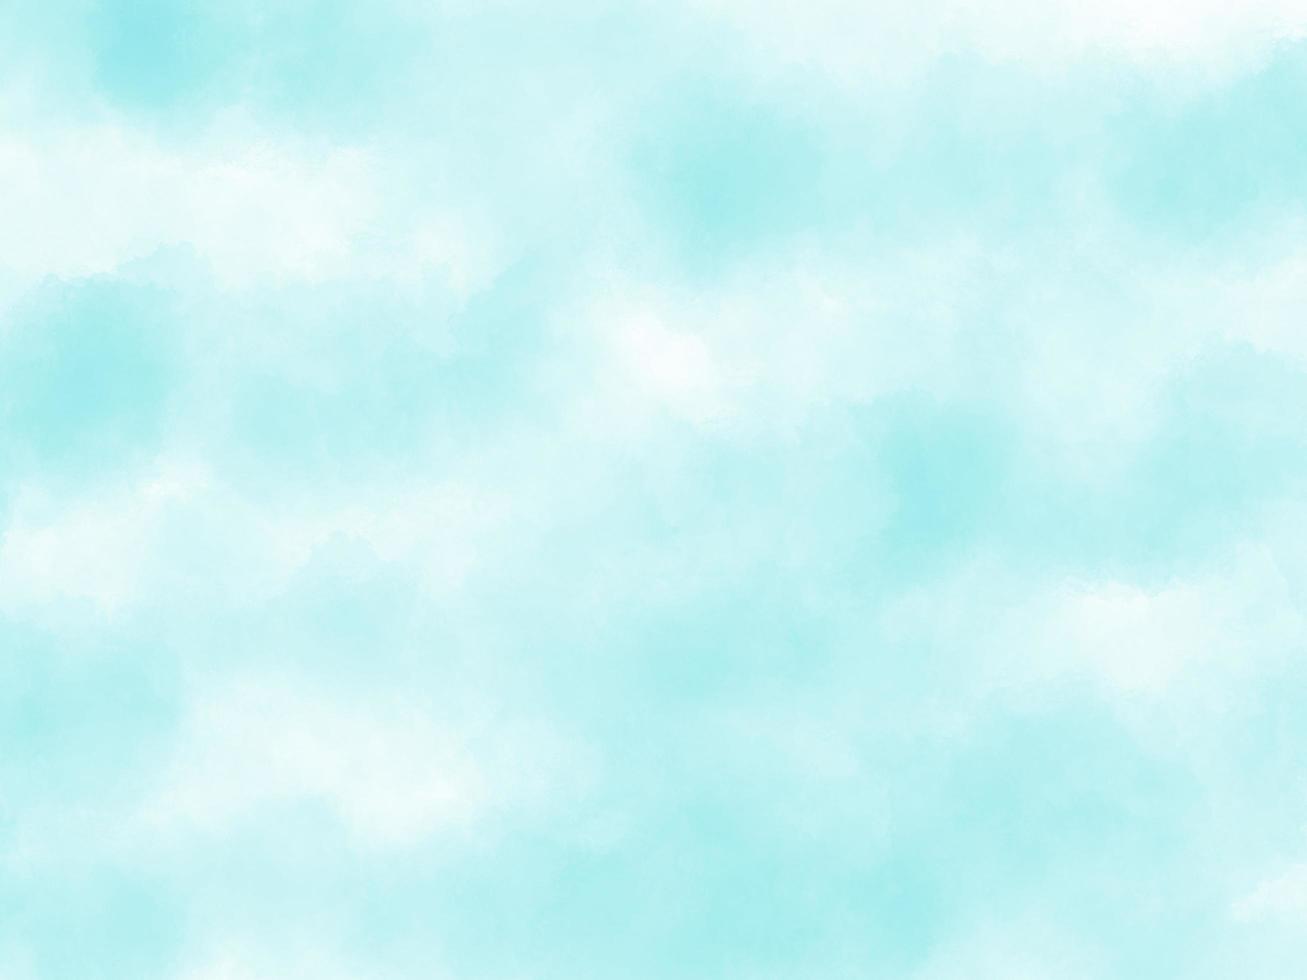 fondo de acuarela de color azul cielo claro manchado suave, lienzo texturizado de papel pintado aquarelle para el diseño, tarjeta de invitación, plantilla. creativos tonos turquesa suaves foto